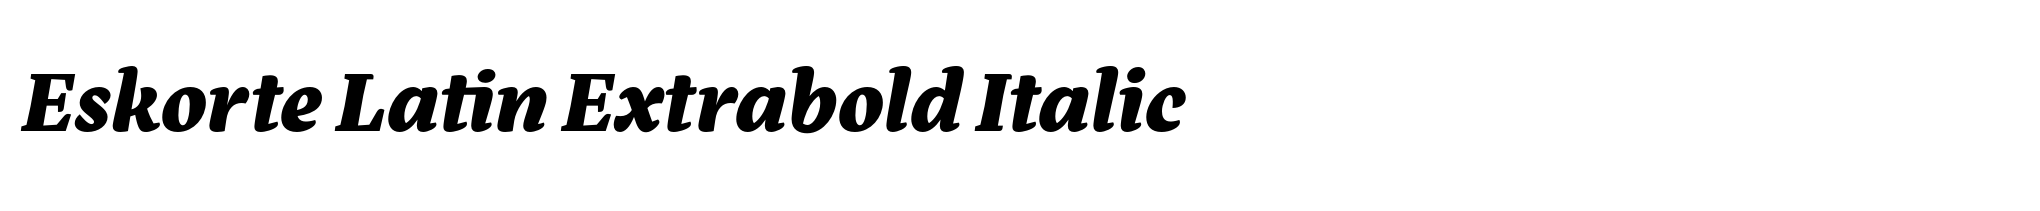 Eskorte Latin Extrabold Italic image